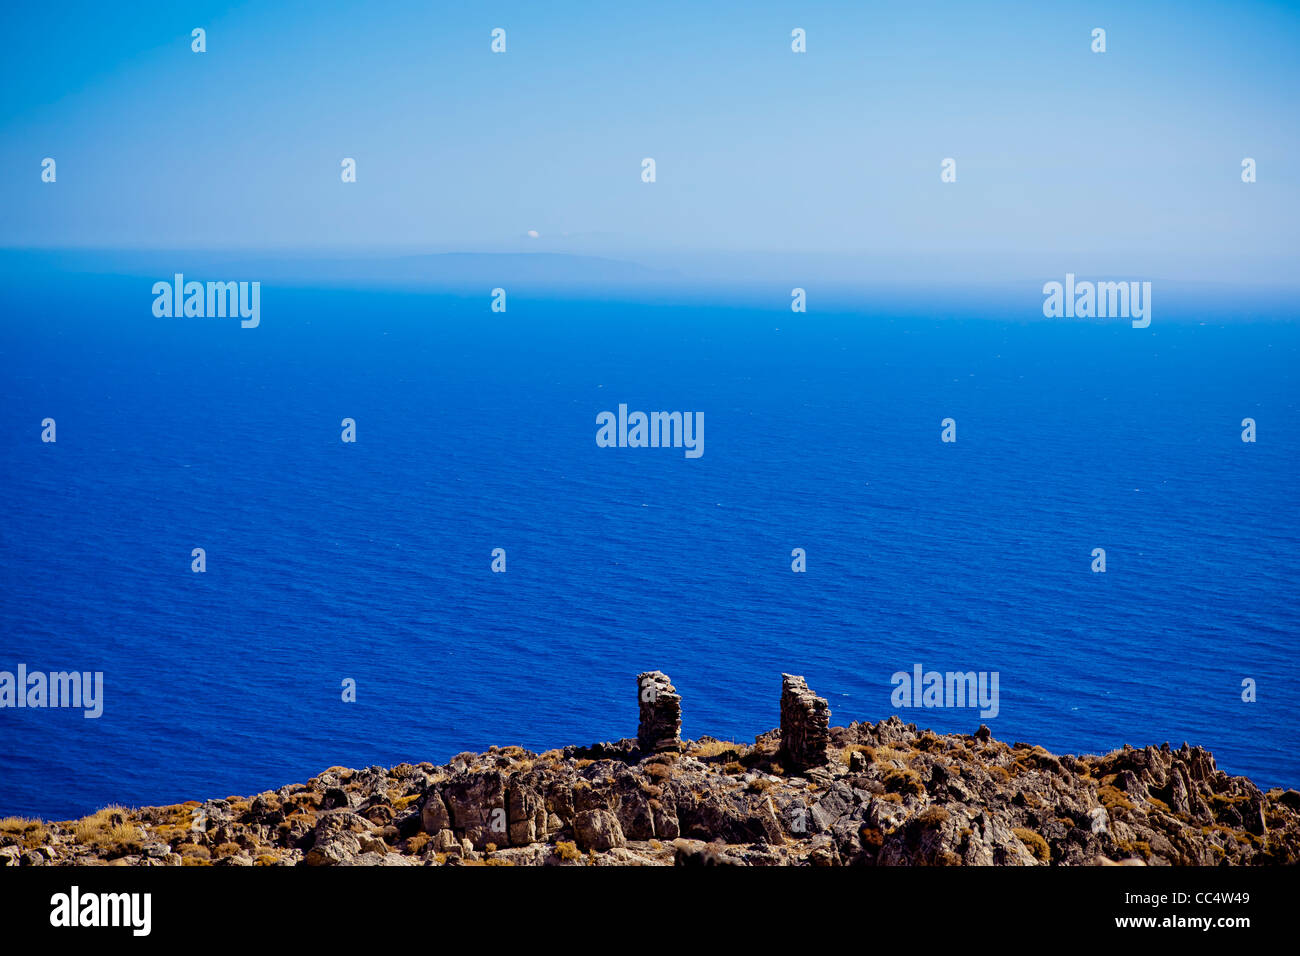 Vue panoramique sur la mer de Libye. Photo prise d'Anopolis en Crète. Banque D'Images